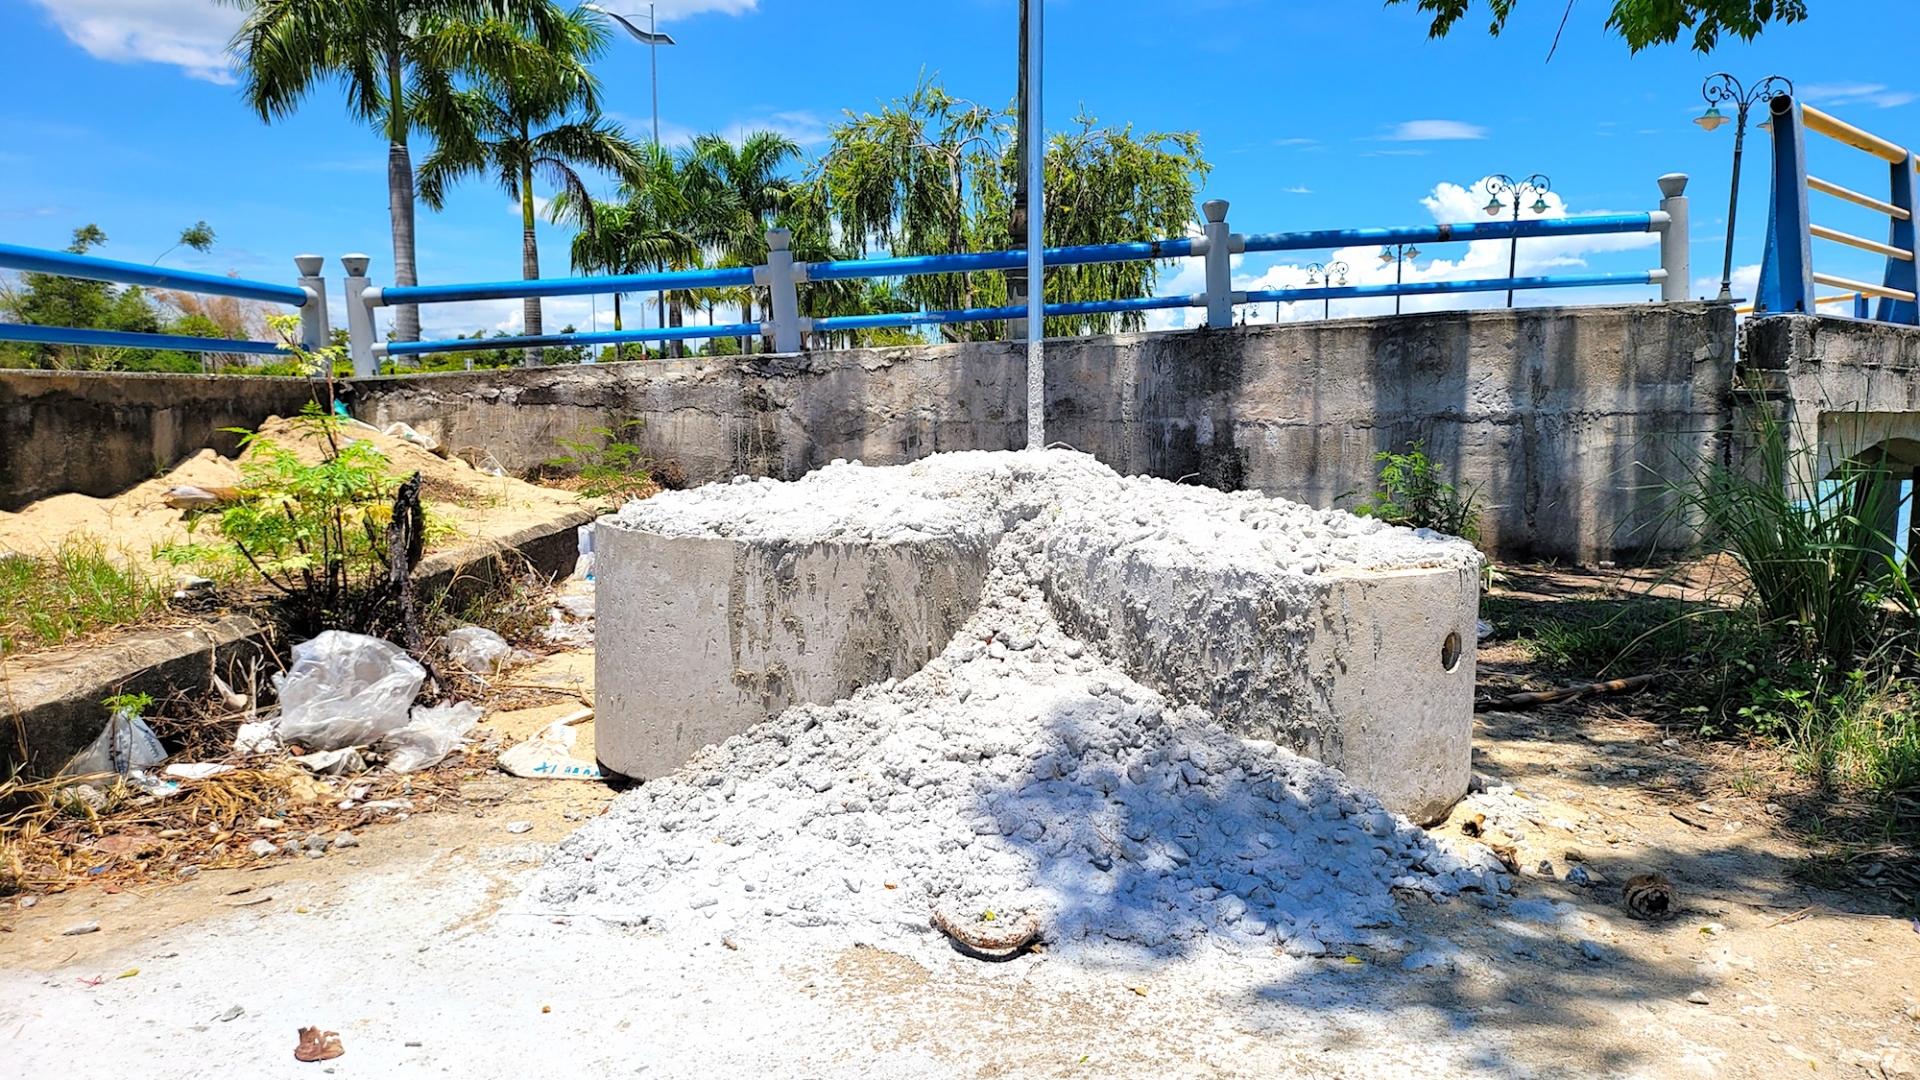 Độc lạ thành phố Quảng Ngãi: Ụ bê tông ngăn “cát tặc” bị… làm giả